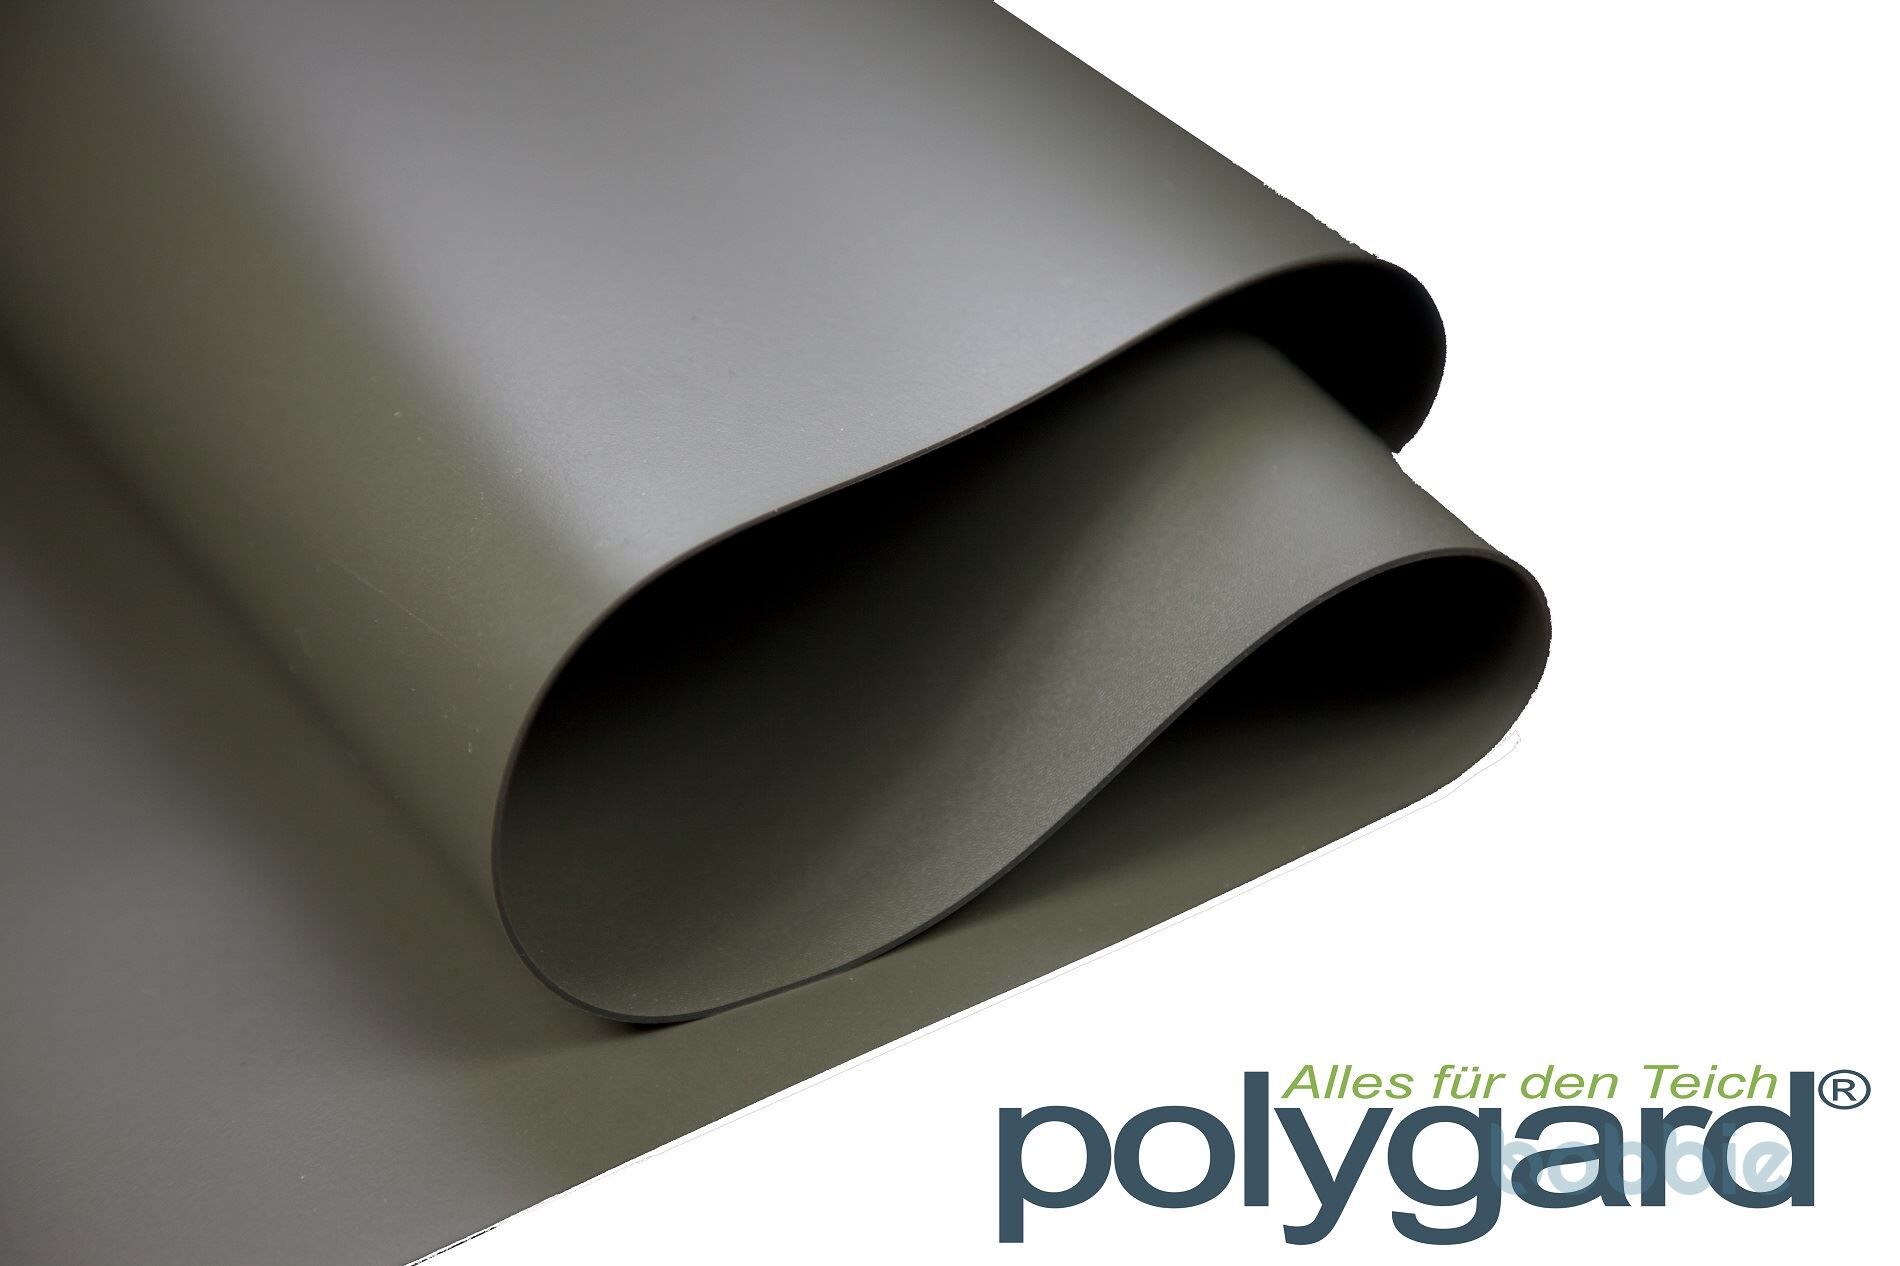 Polygard PVC Teichfolie 1mm oliv-grün PrePack - verschiedene Abmassungen